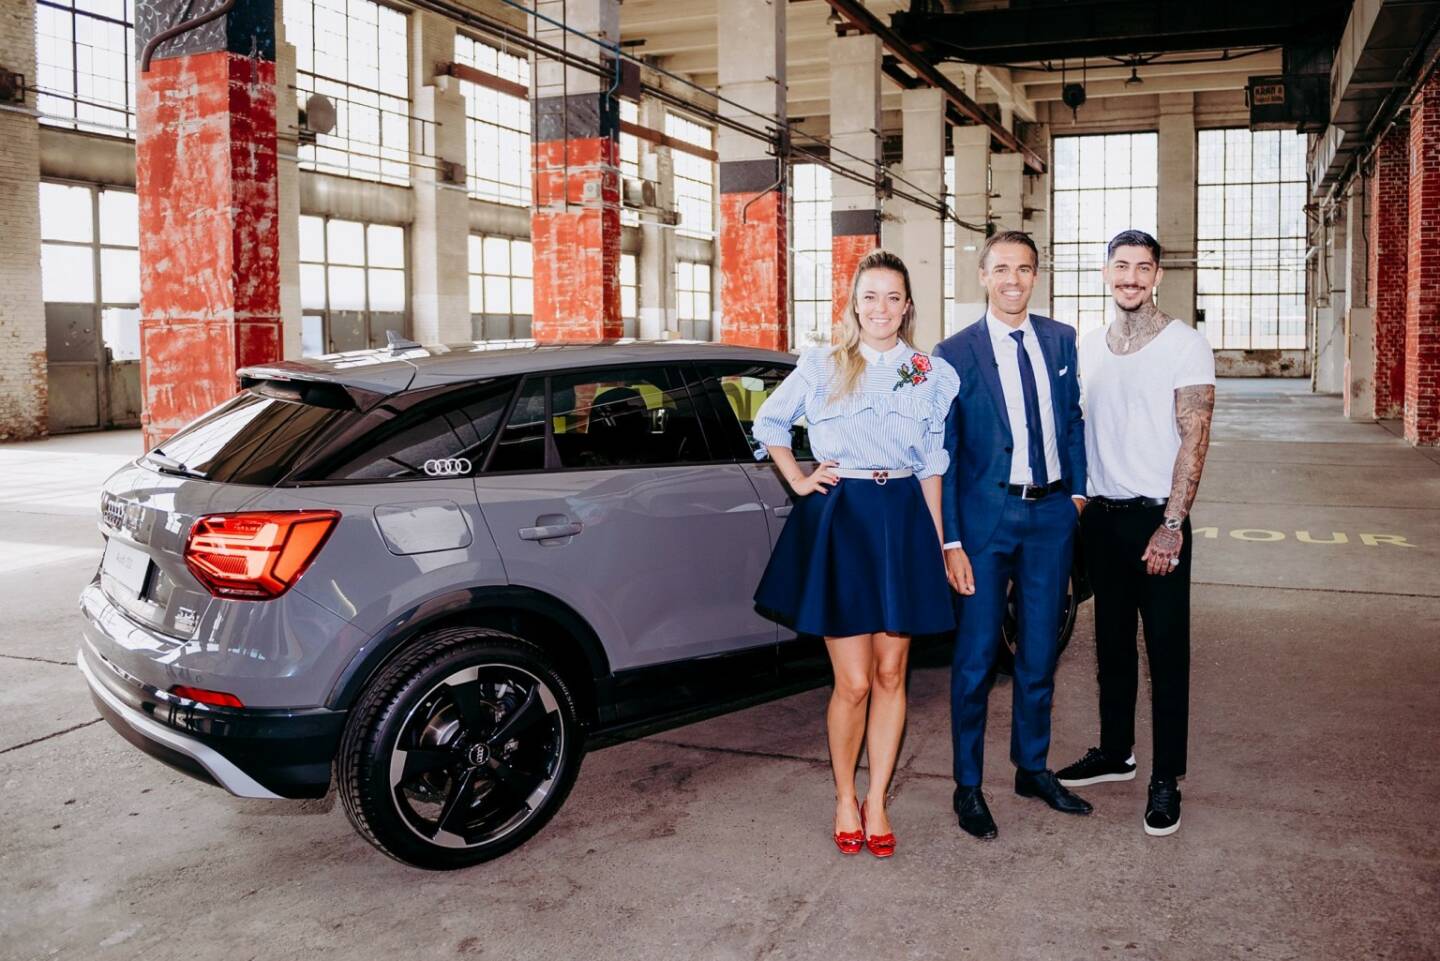 Audi ist exklusiver Auto-Partner von Austria's next Topmodel bei ATV, Marina Hoermanseder, Thomas Beran (Markenleiter Audi Österreich) und Daniel Bamdad; (c) ATV / Jörg Klickermann